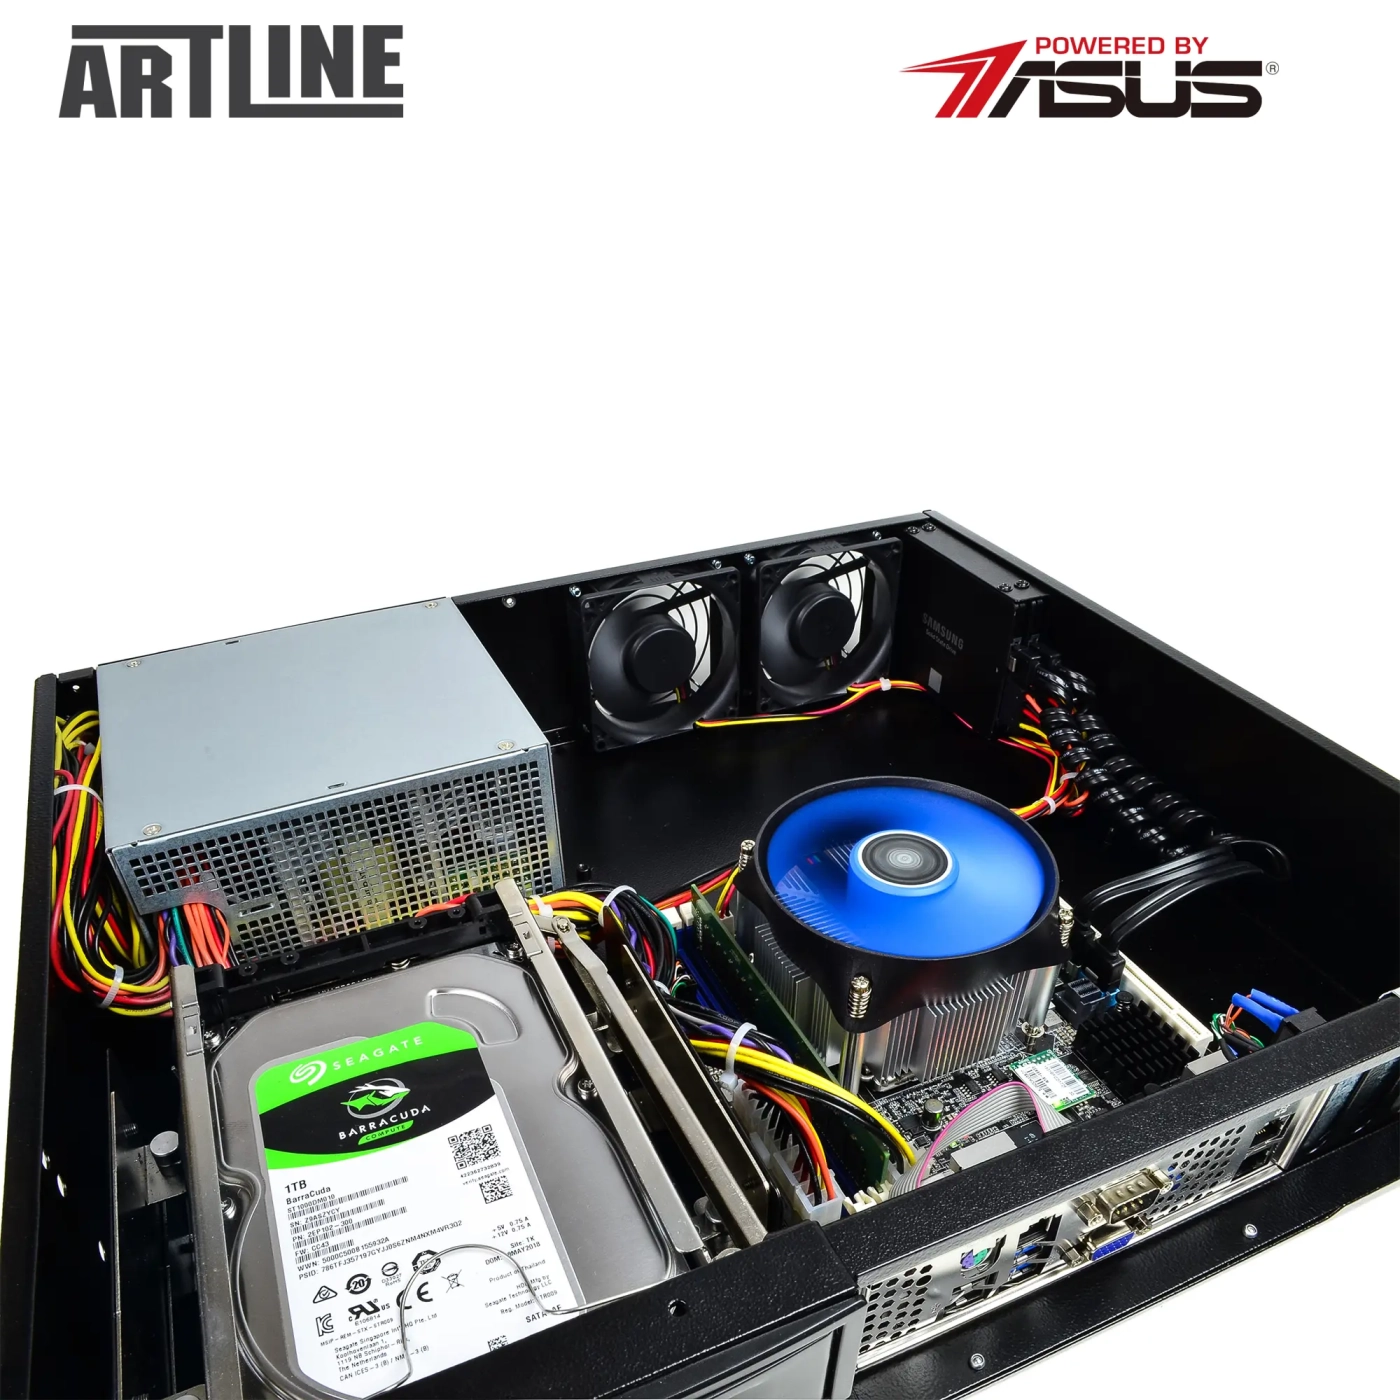 Купить Сервер ARTLINE Business R37 (R37v91) - фото 10